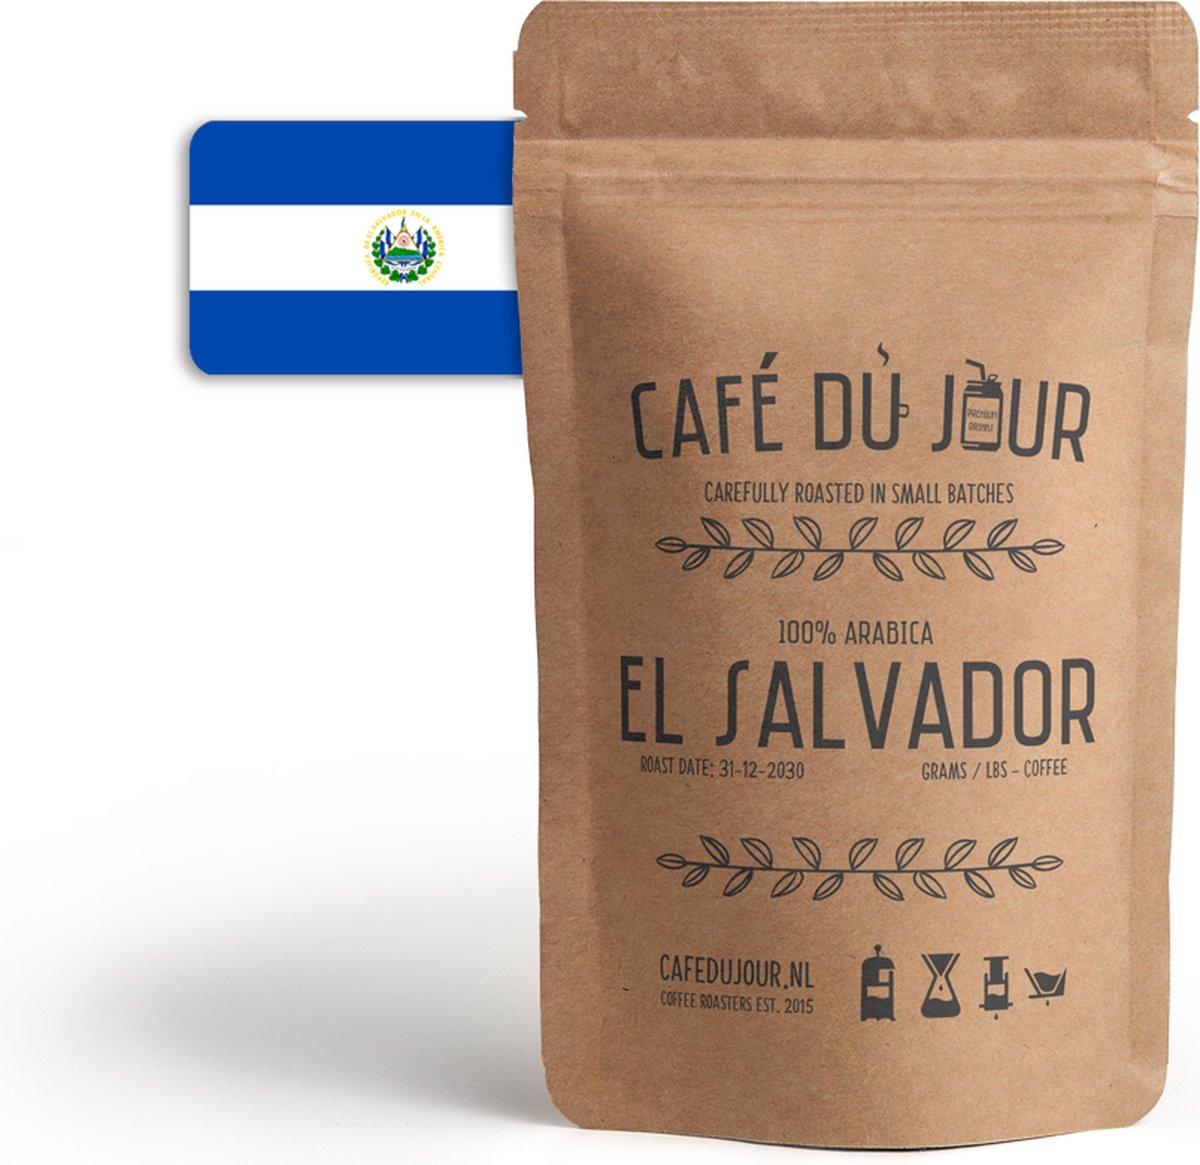 Café du Jour 100% arabica El Salvador 1 kilo vers gebrande koffiebonen